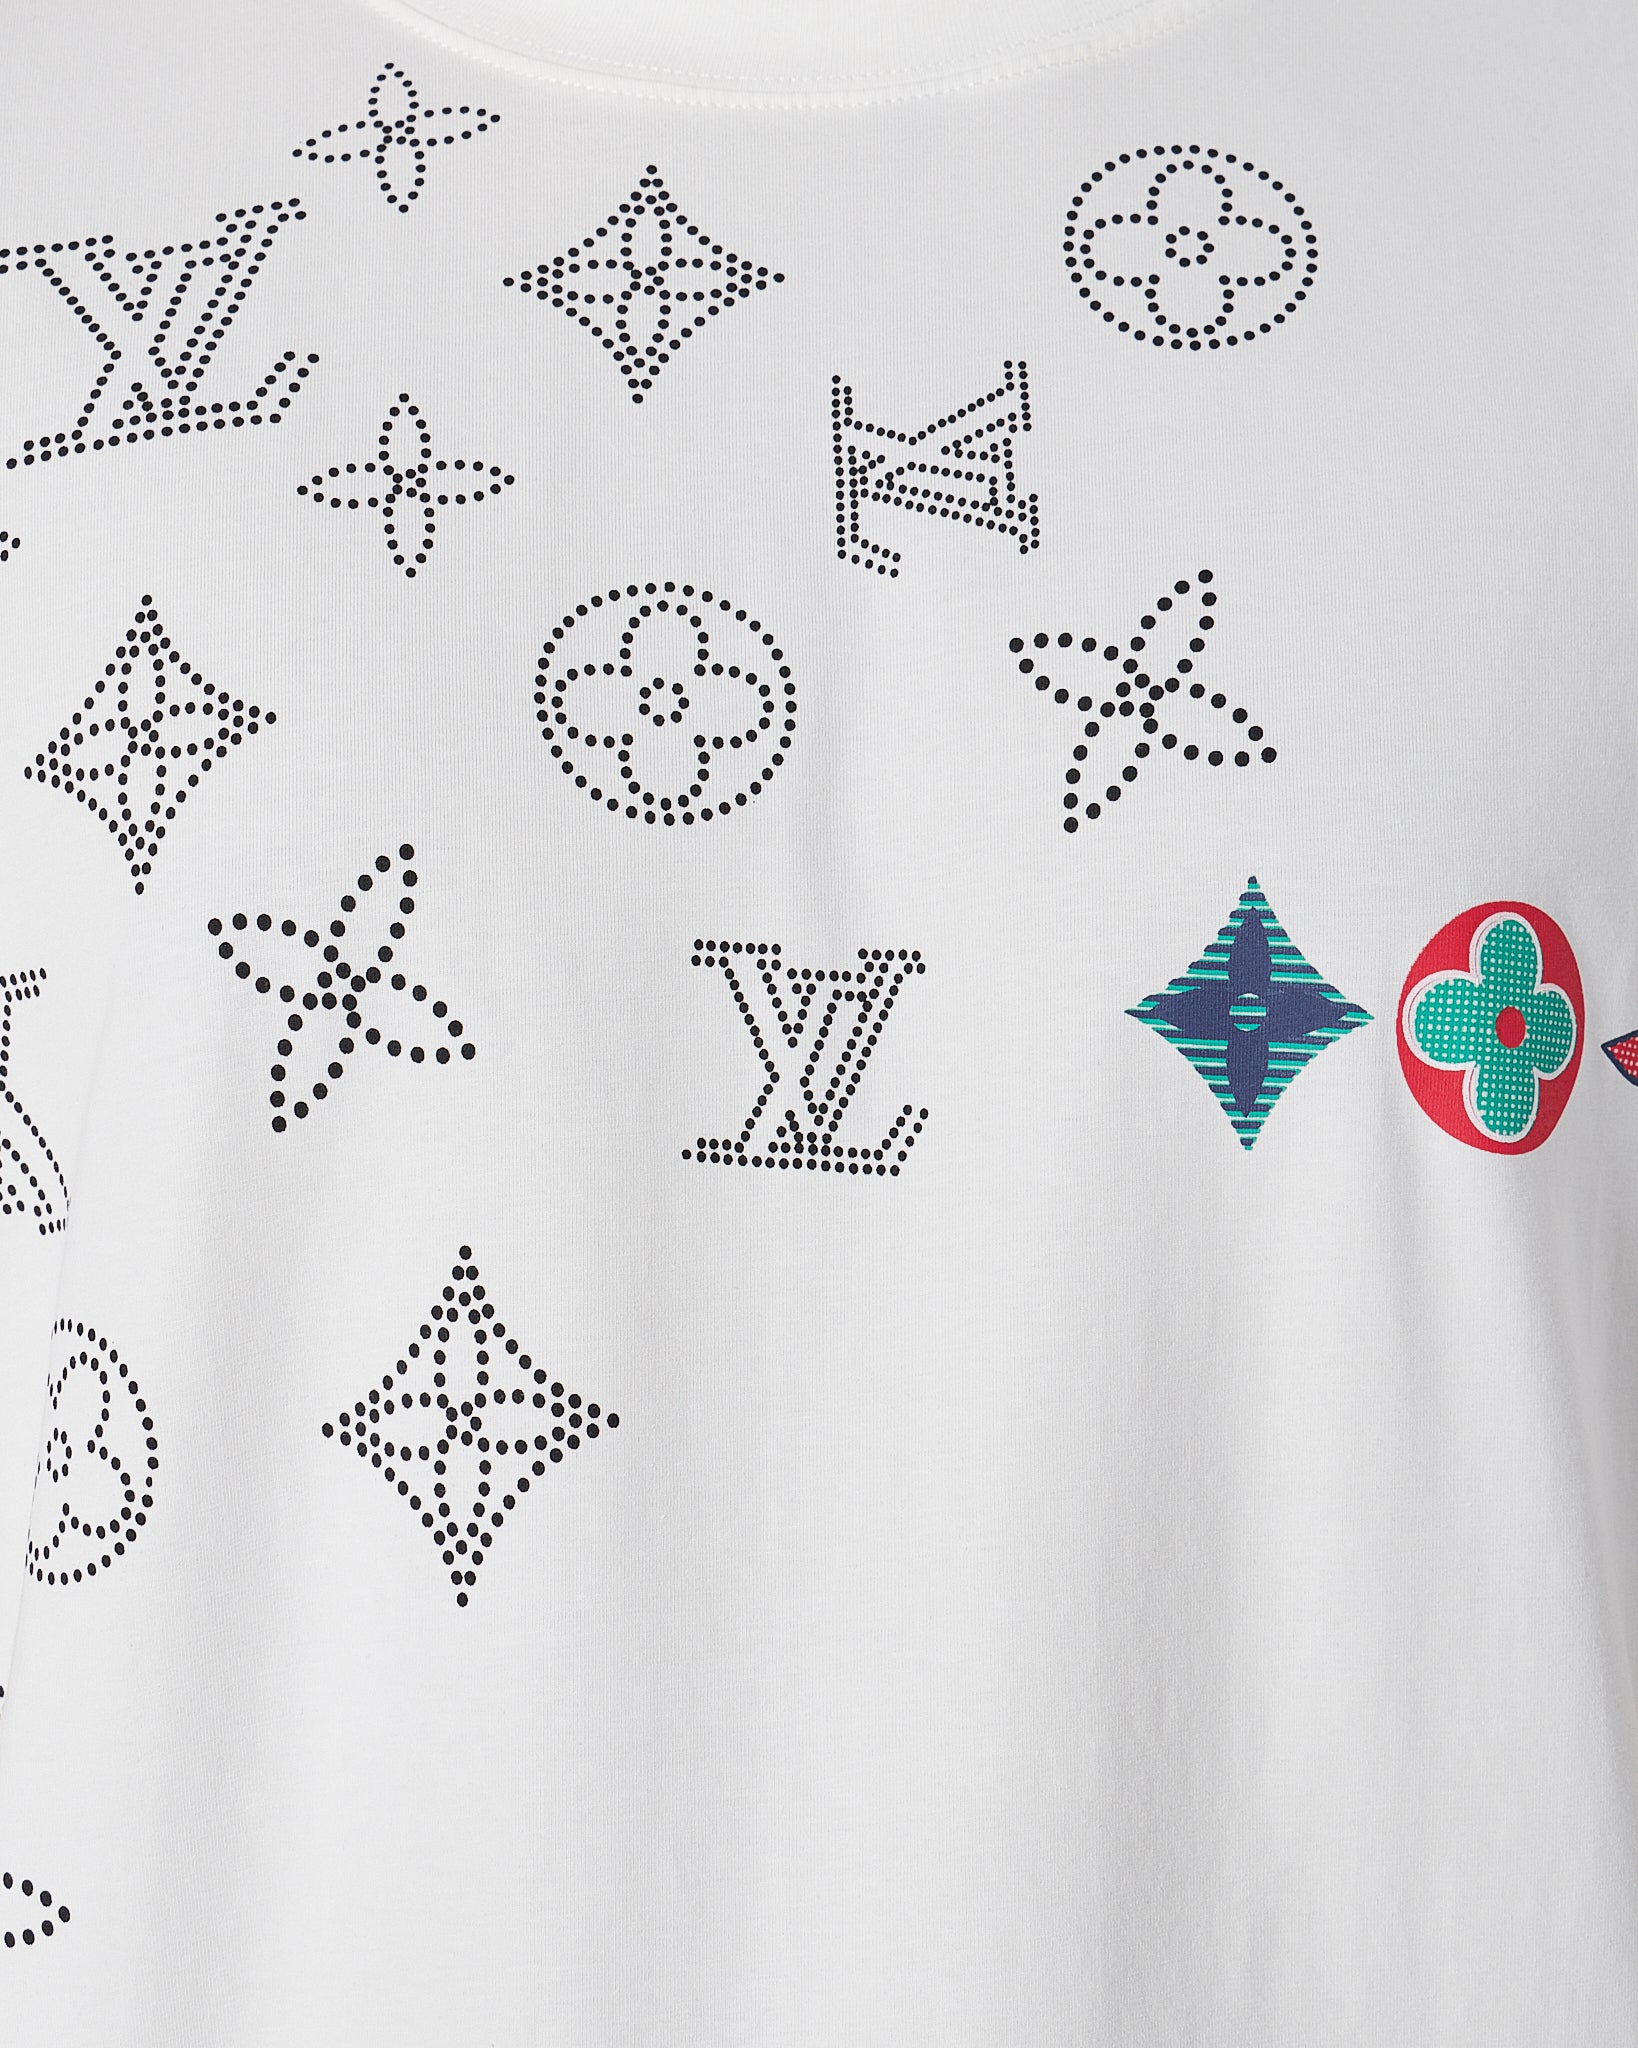 LV Monogram Embroidered Men White T-Shirt 22.90